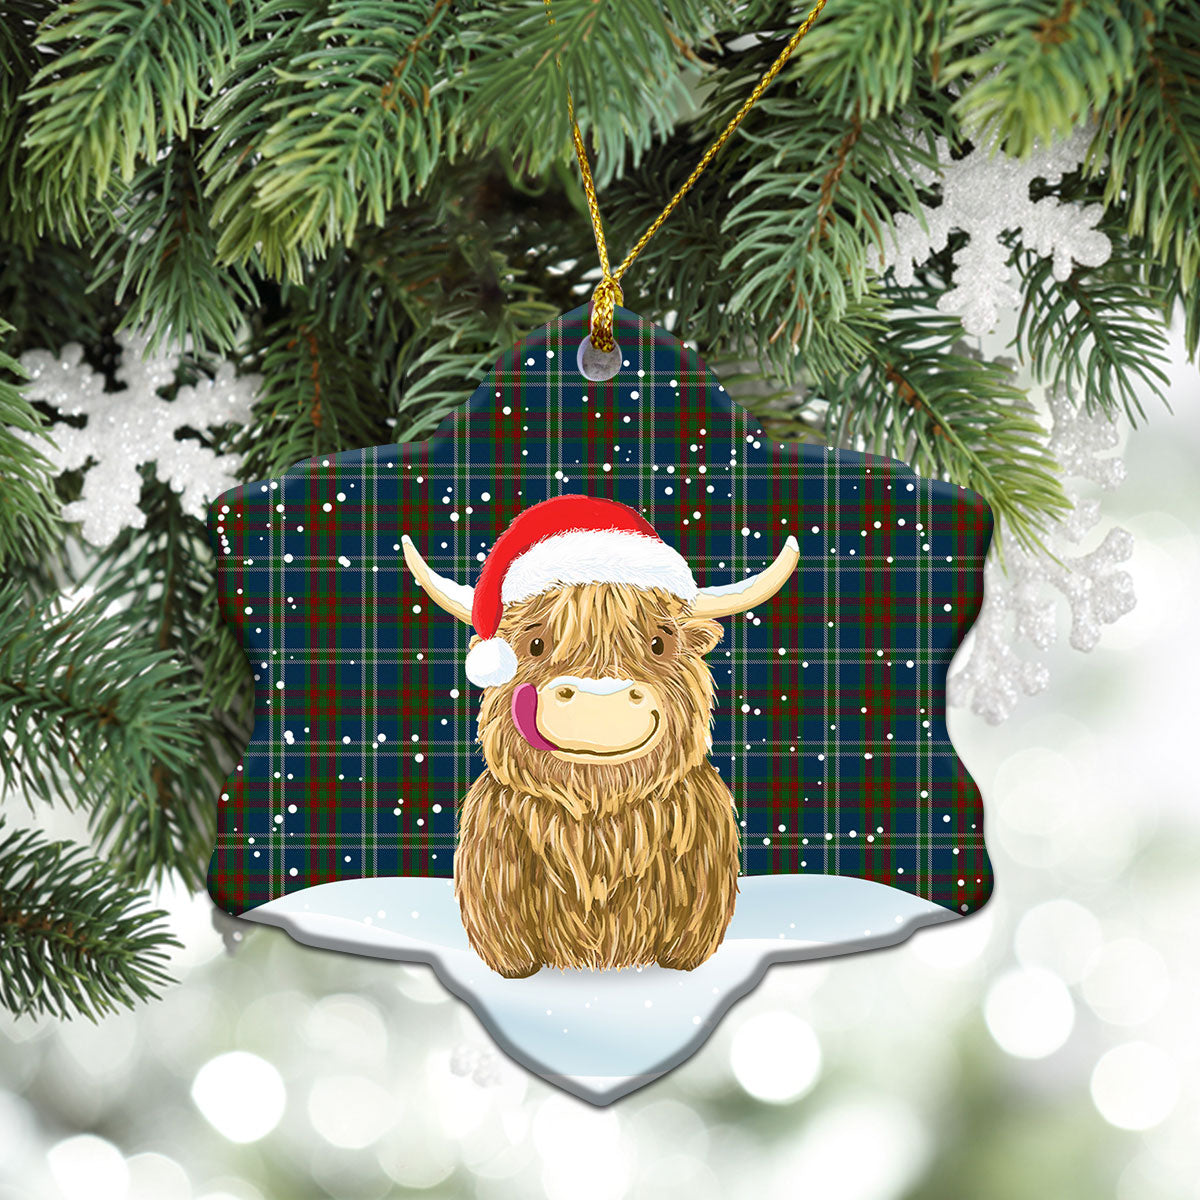 Cathcart Tartan Christmas Ceramic Ornament - Highland Cows Style